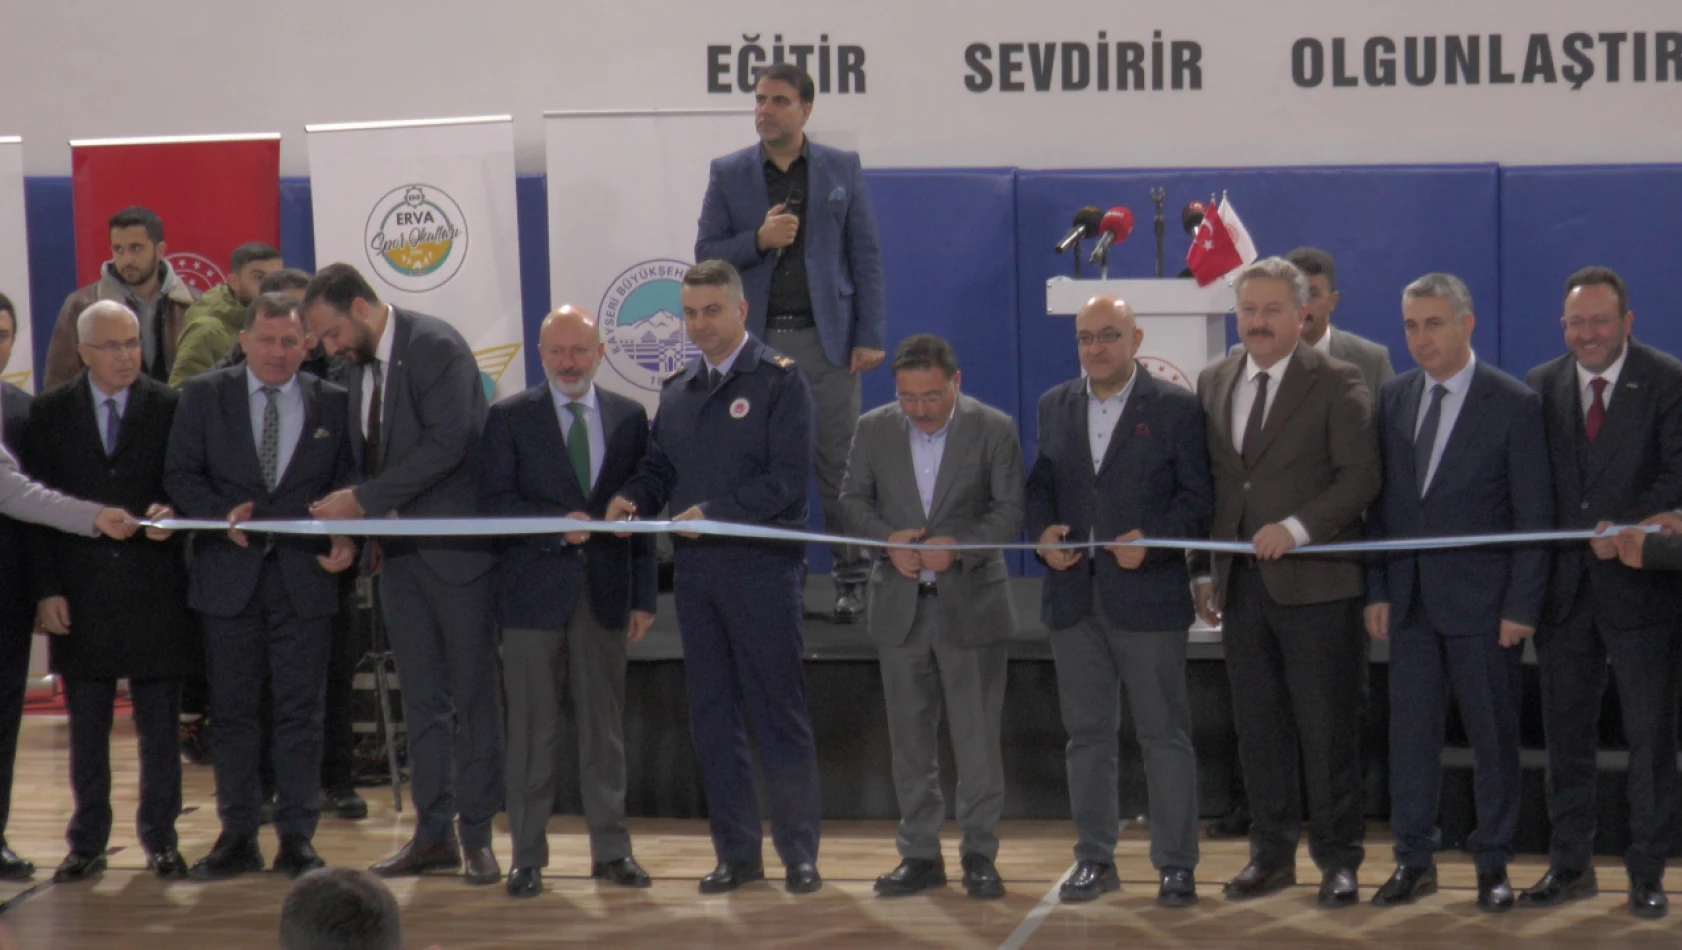 ERVA Gençlik Spor Kulübü'nün açılışına Kayseri'nin önemli isimleri katıldı